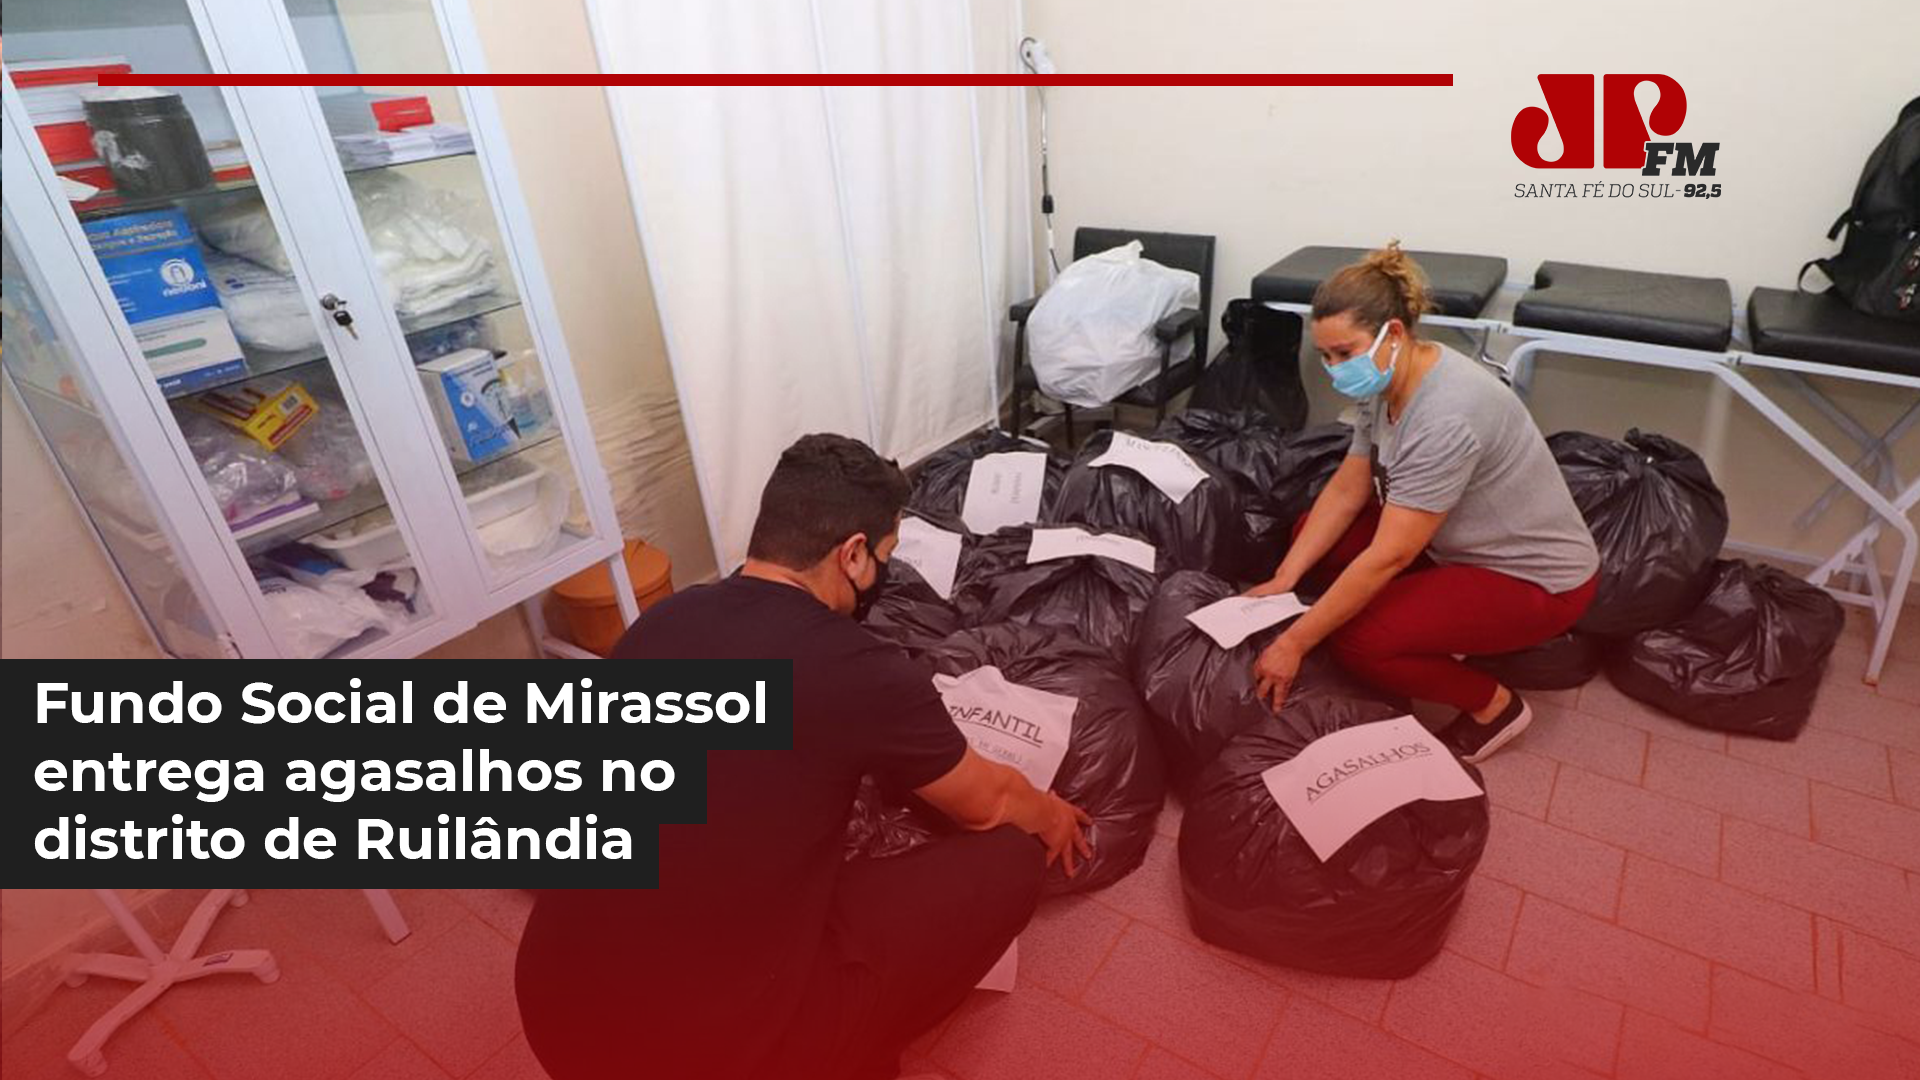 Fundo Social de Mirassol entrega agasalhos no distrito de Ruilândia